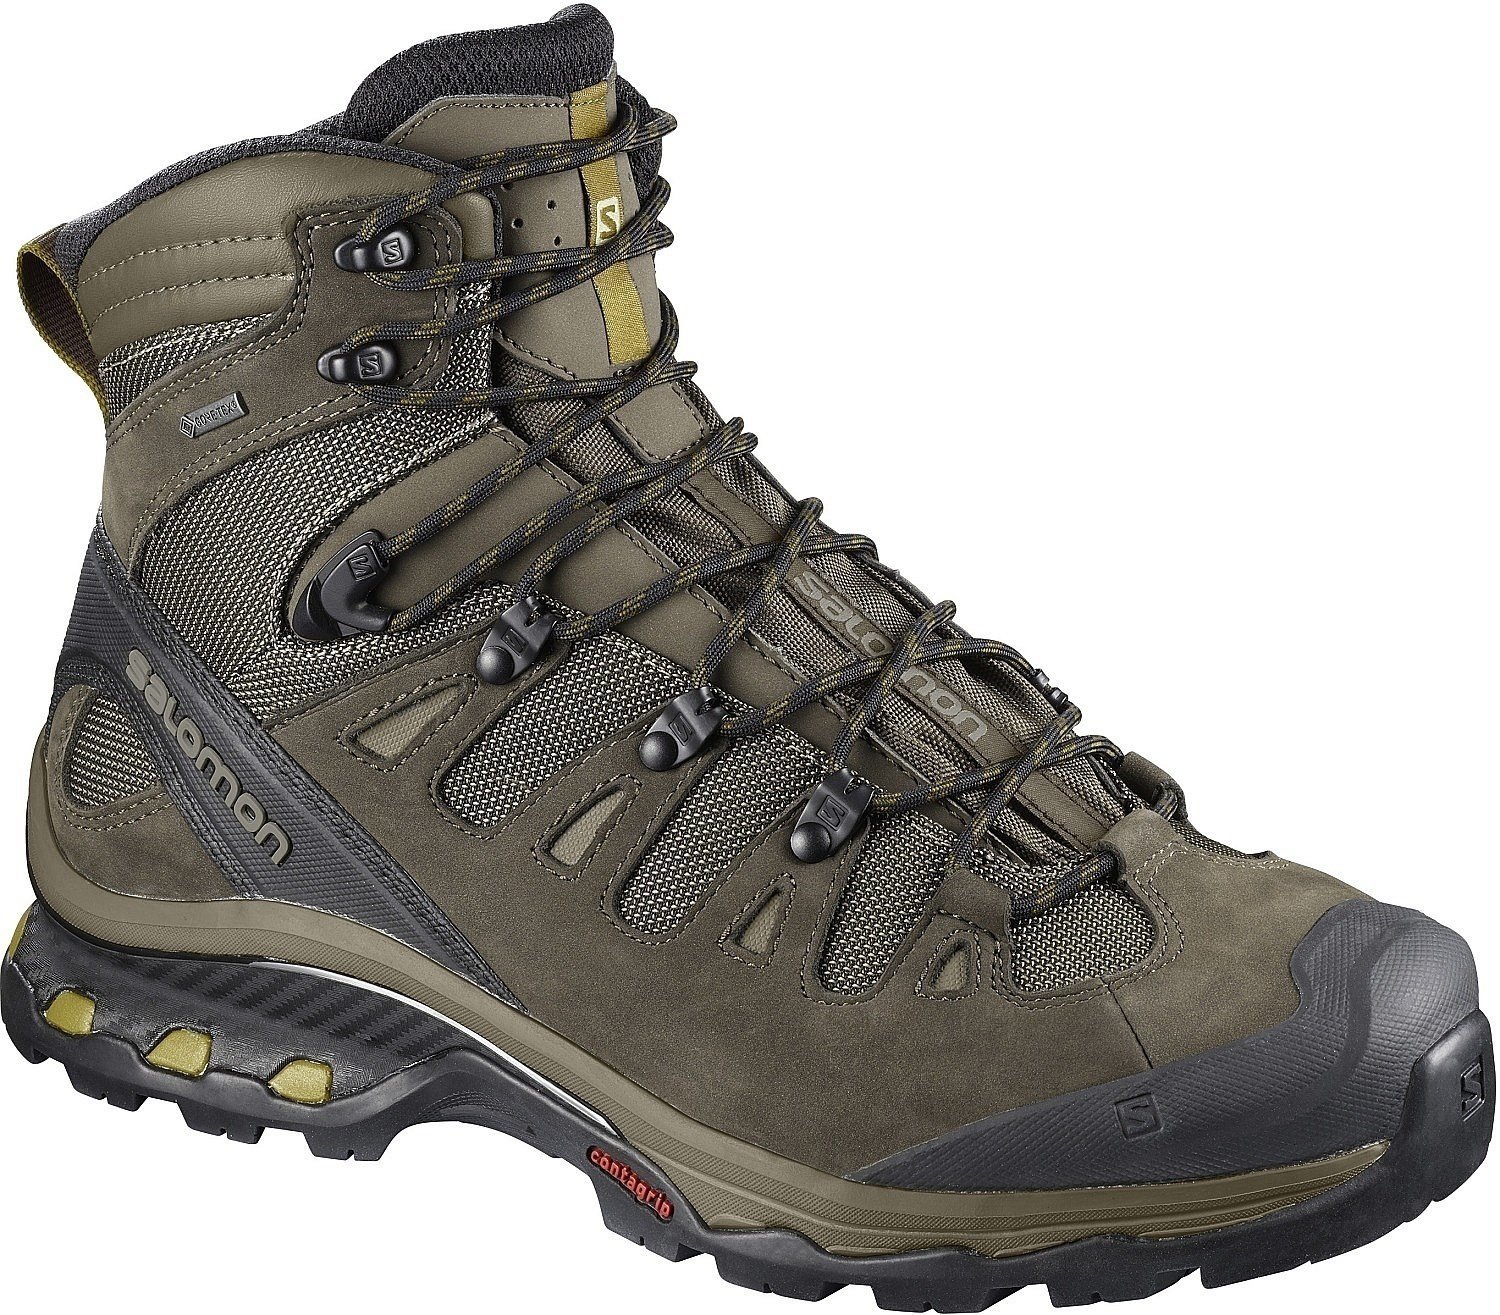 Ανδρικό Παπούτσι Ορειβασίας Salomon Quest 4D 3 GTX Wren/Bungee Cord 46 Ανδρικό Παπούτσι Ορειβασίας